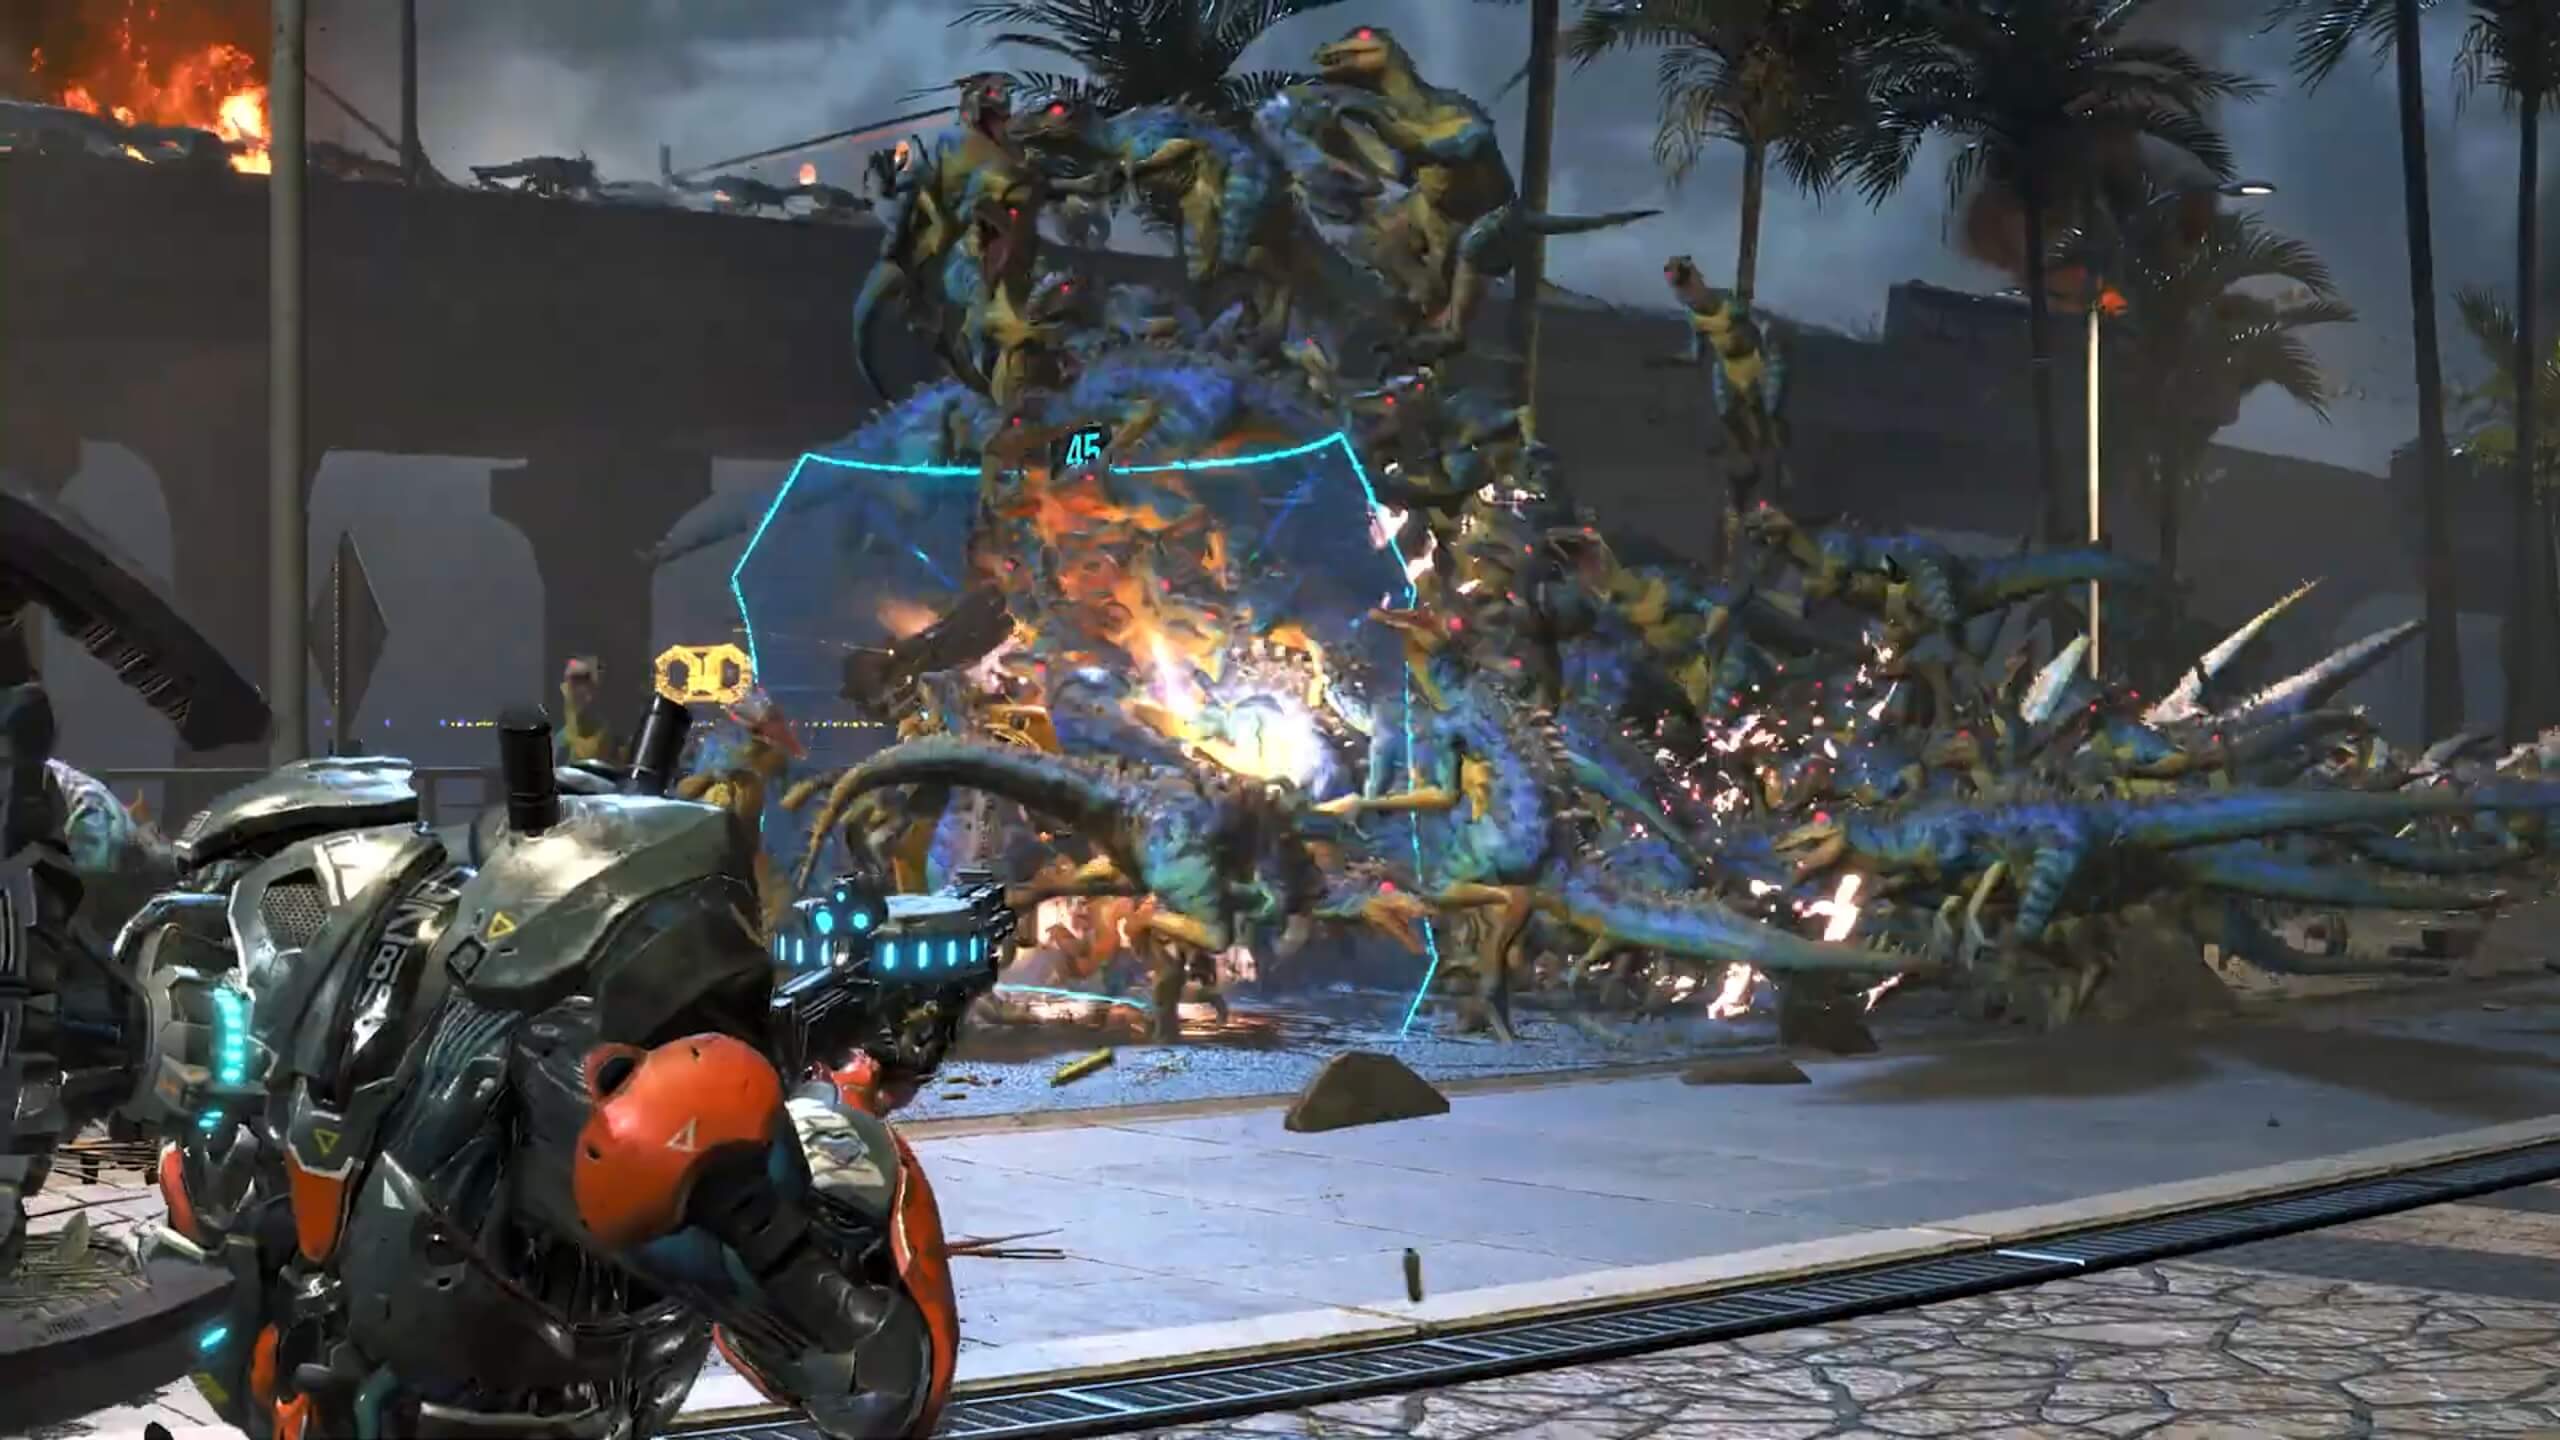 Capcom libera novo trailer de Exoprimal com foco nos dinossauros do game